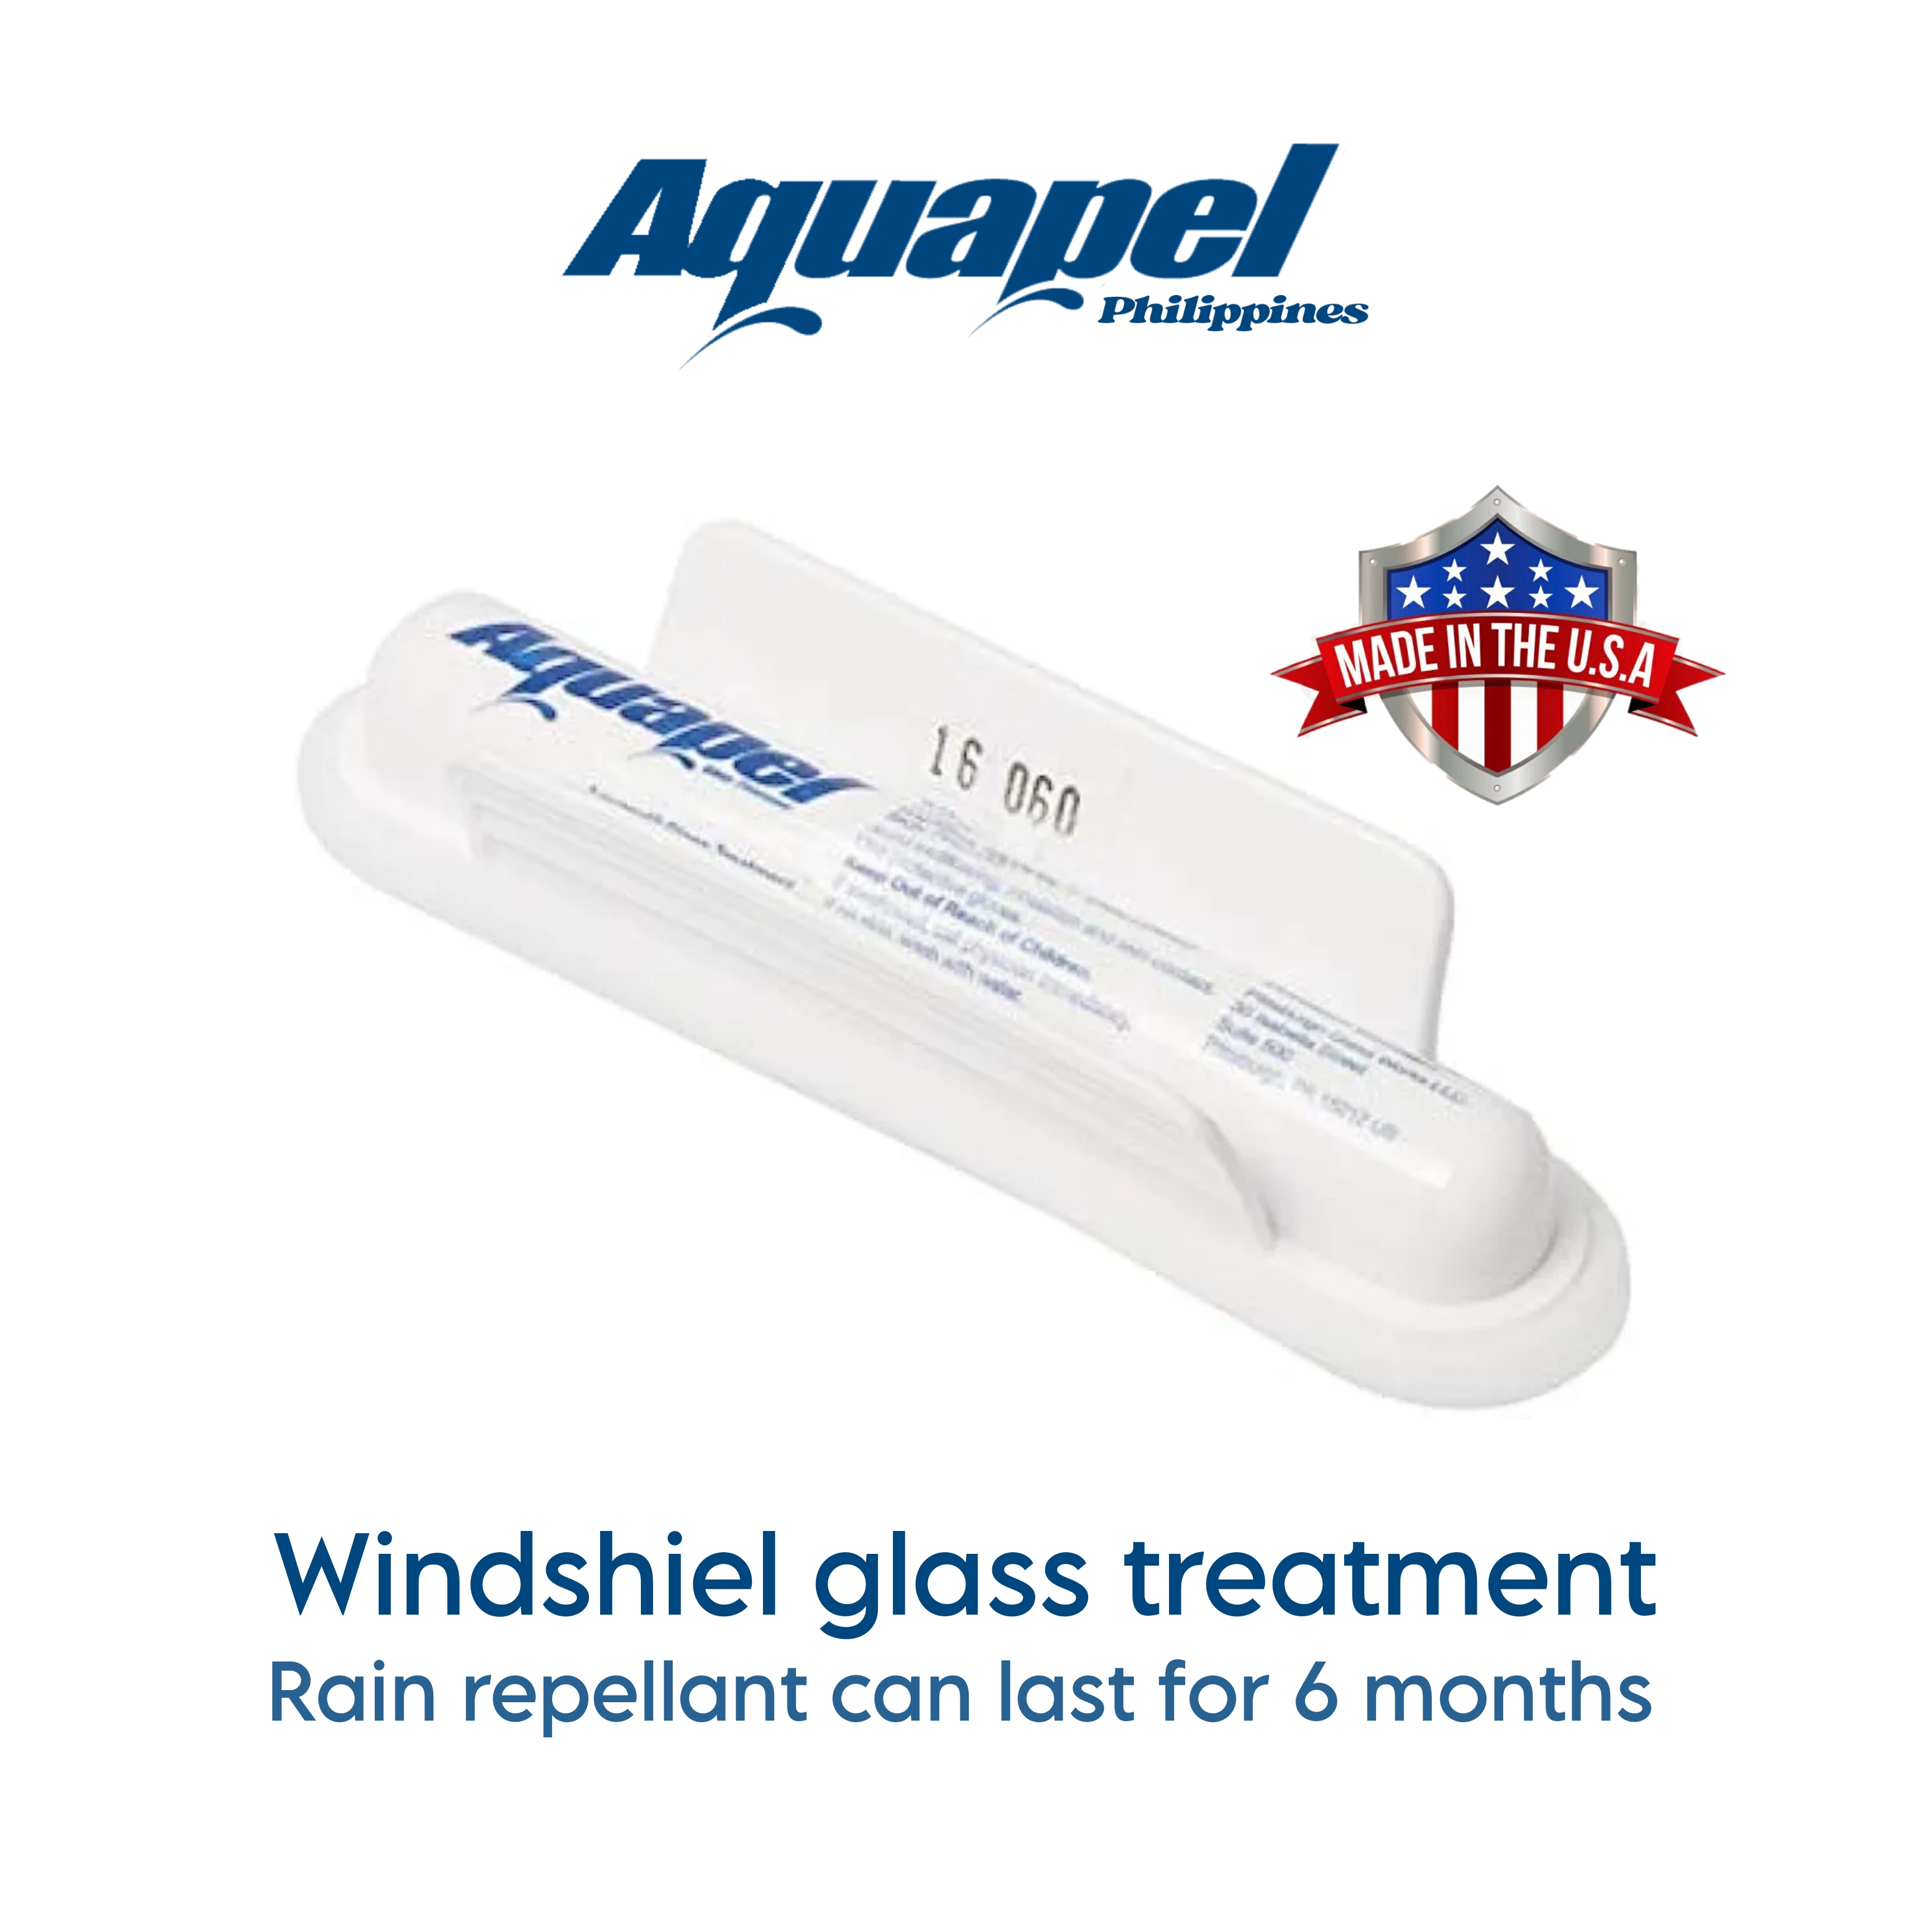 Aquapel repels rain for remarkably improved vision - Krown St